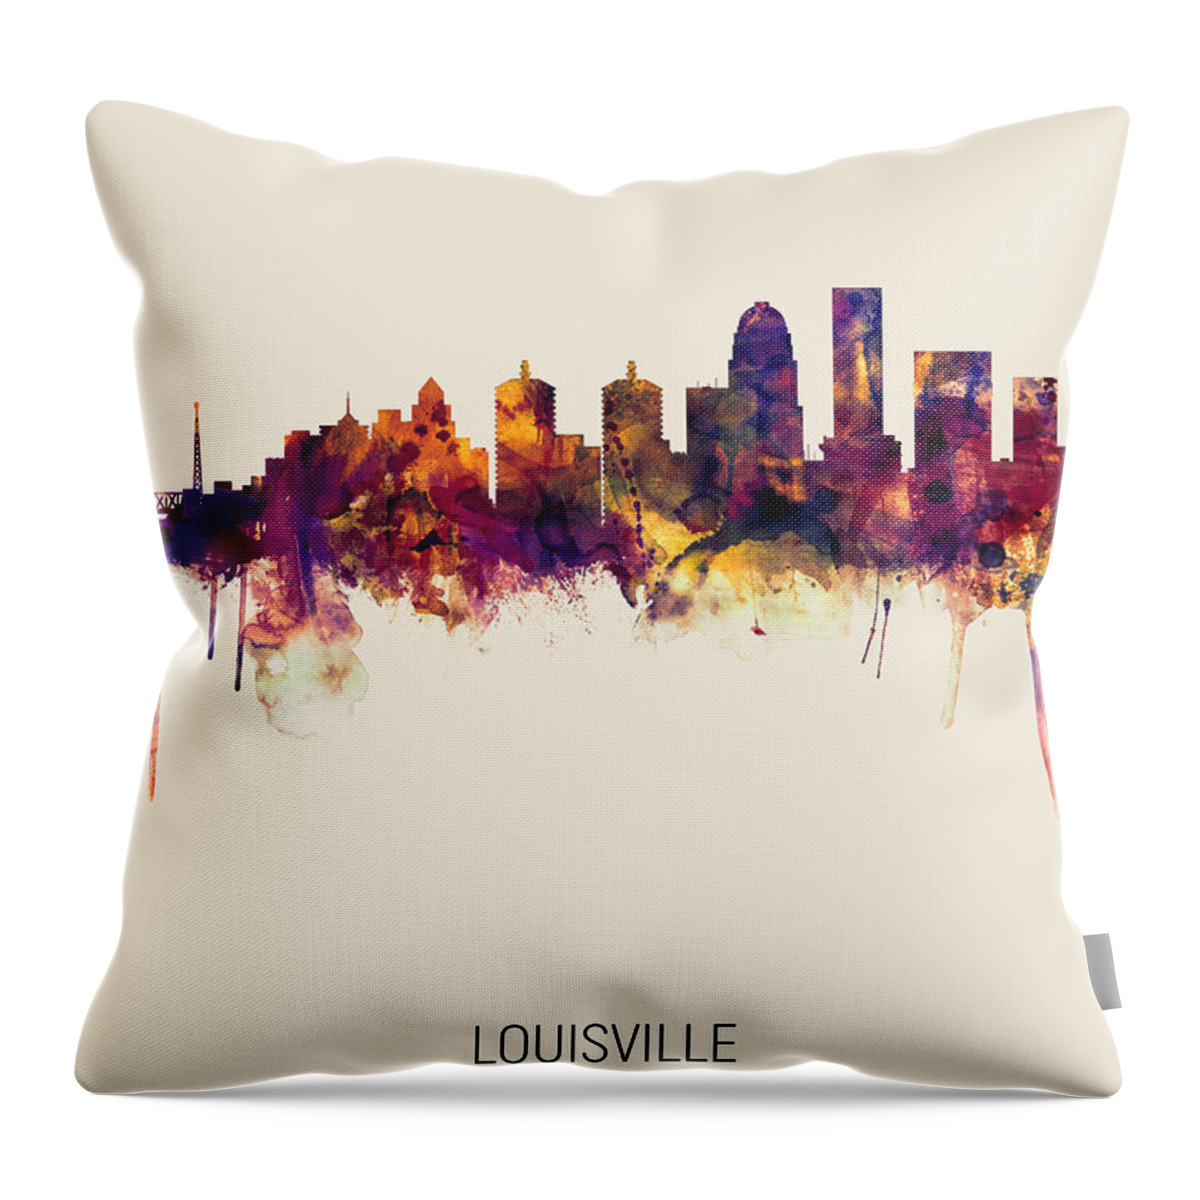 Louisville Throw Pillow featuring the digital art Louisville Kentucky City Skyline #11 by Michael Tompsett